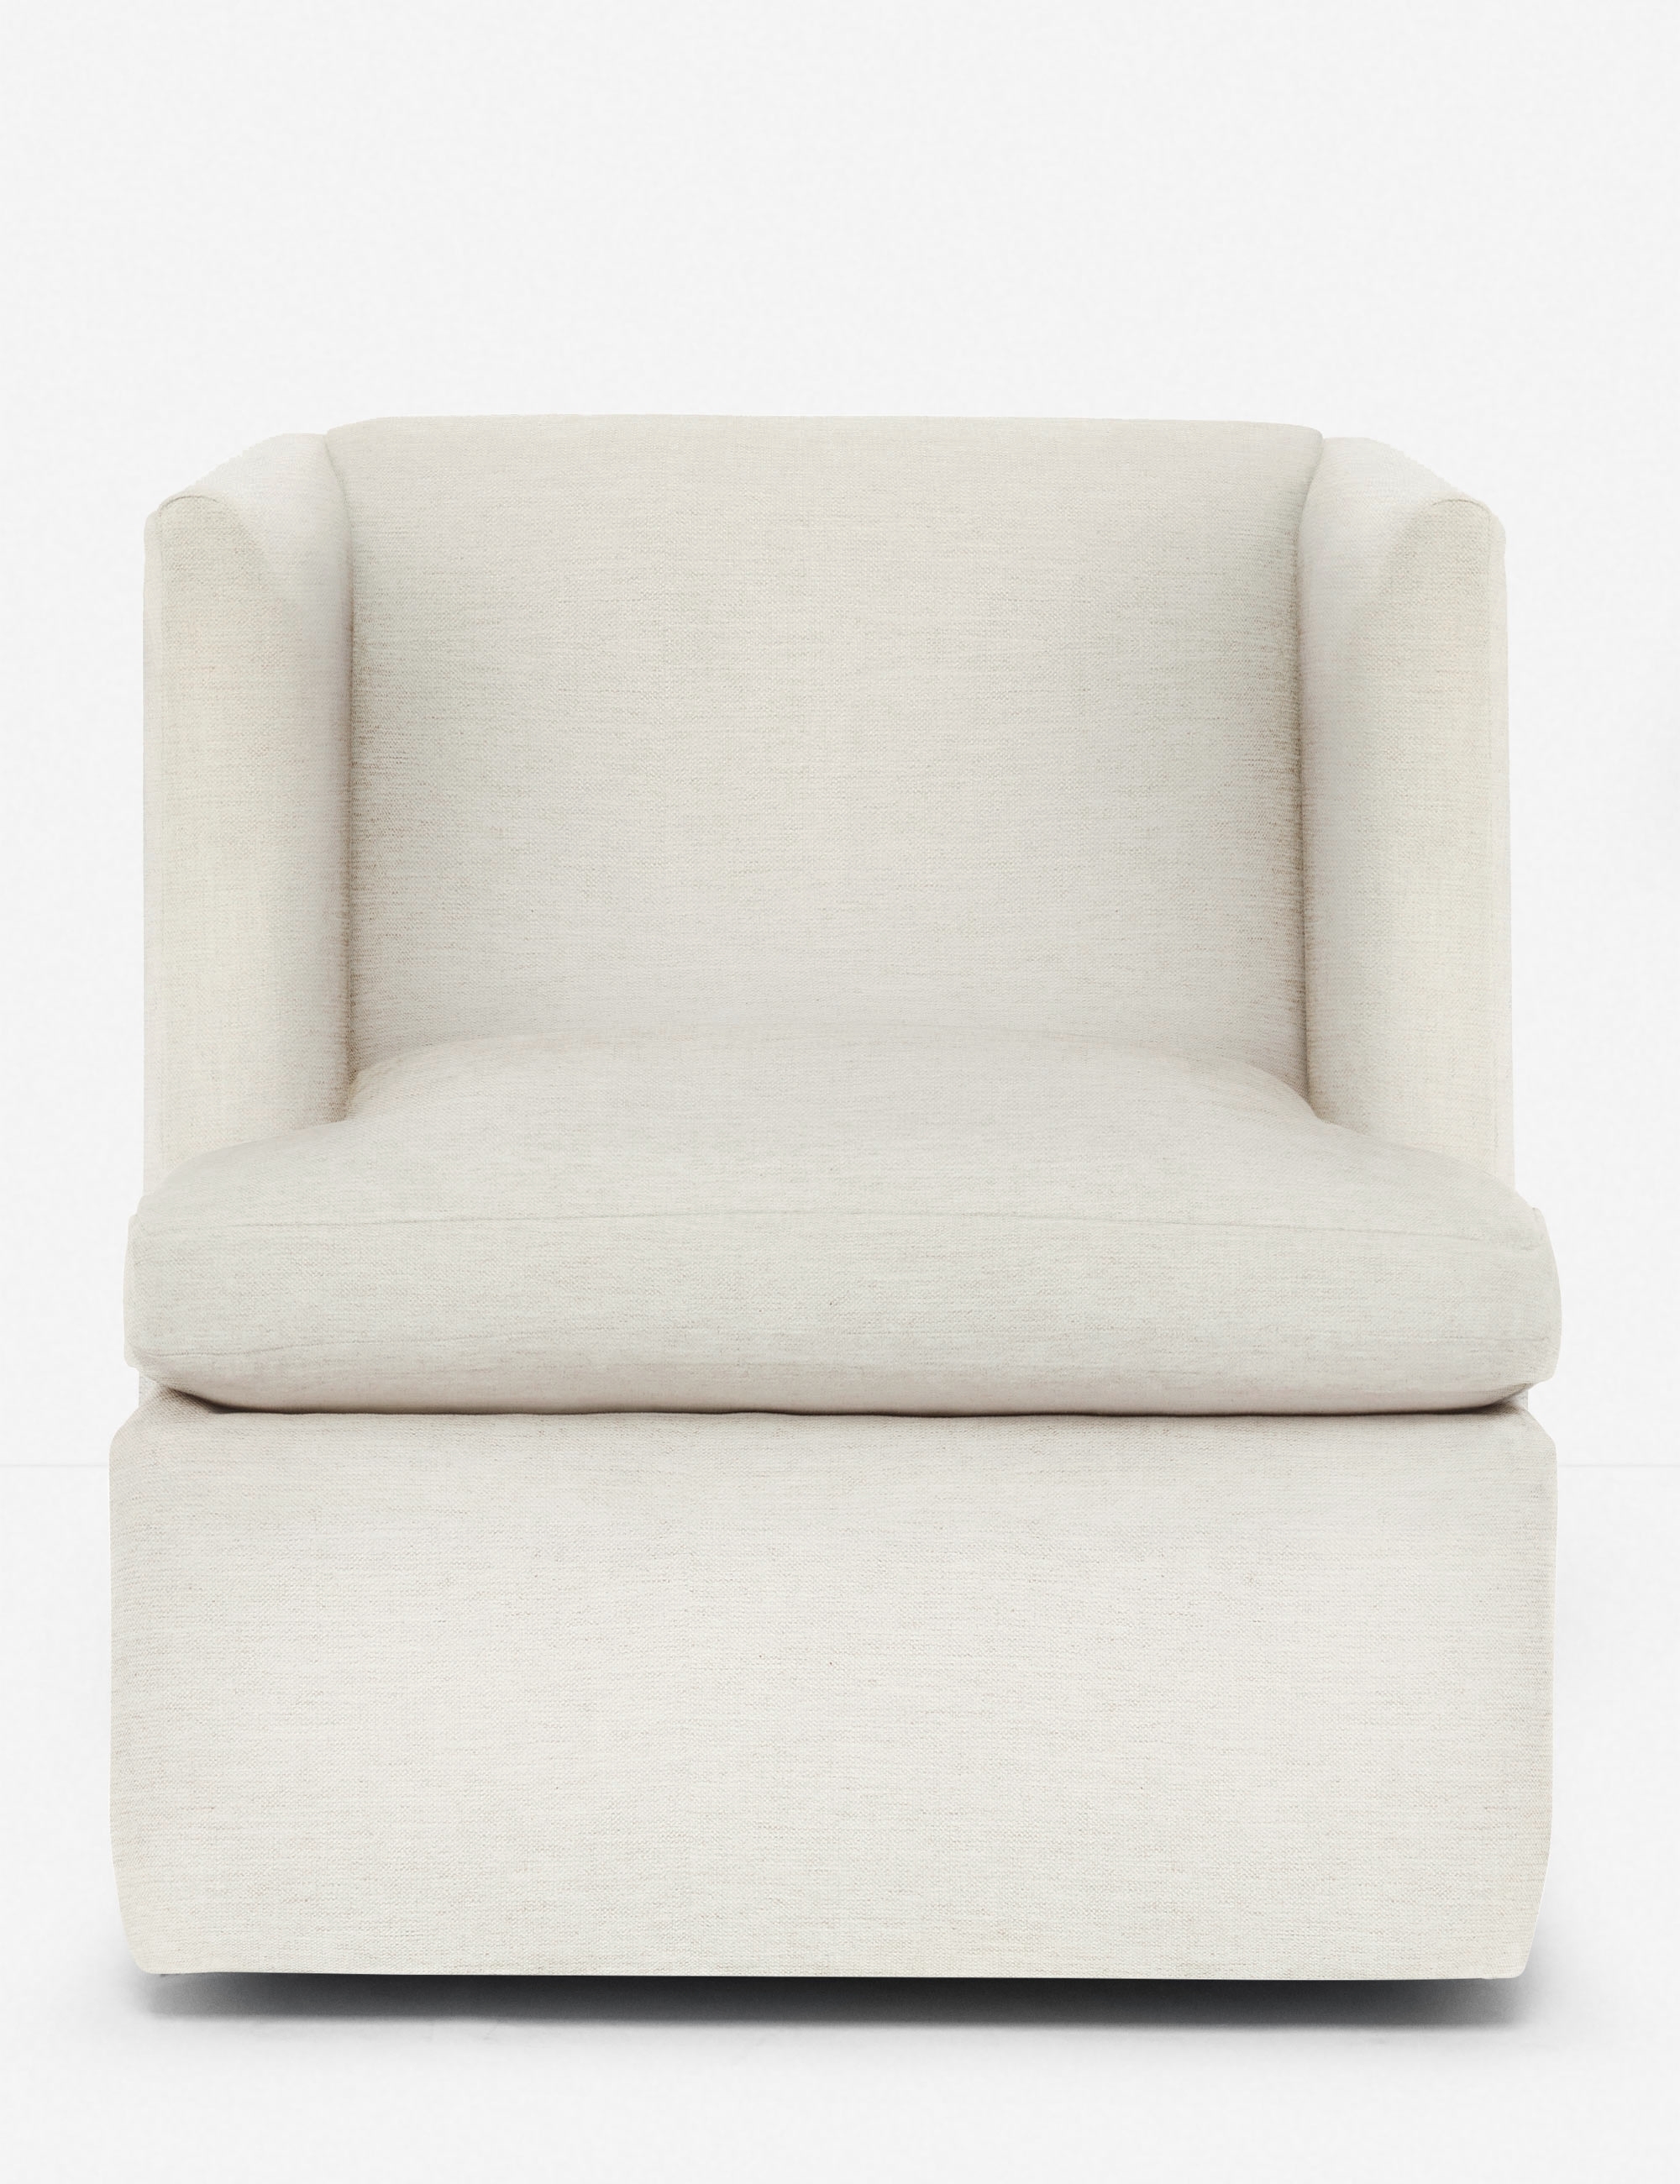 Hayden Swivel Chair - Image 1